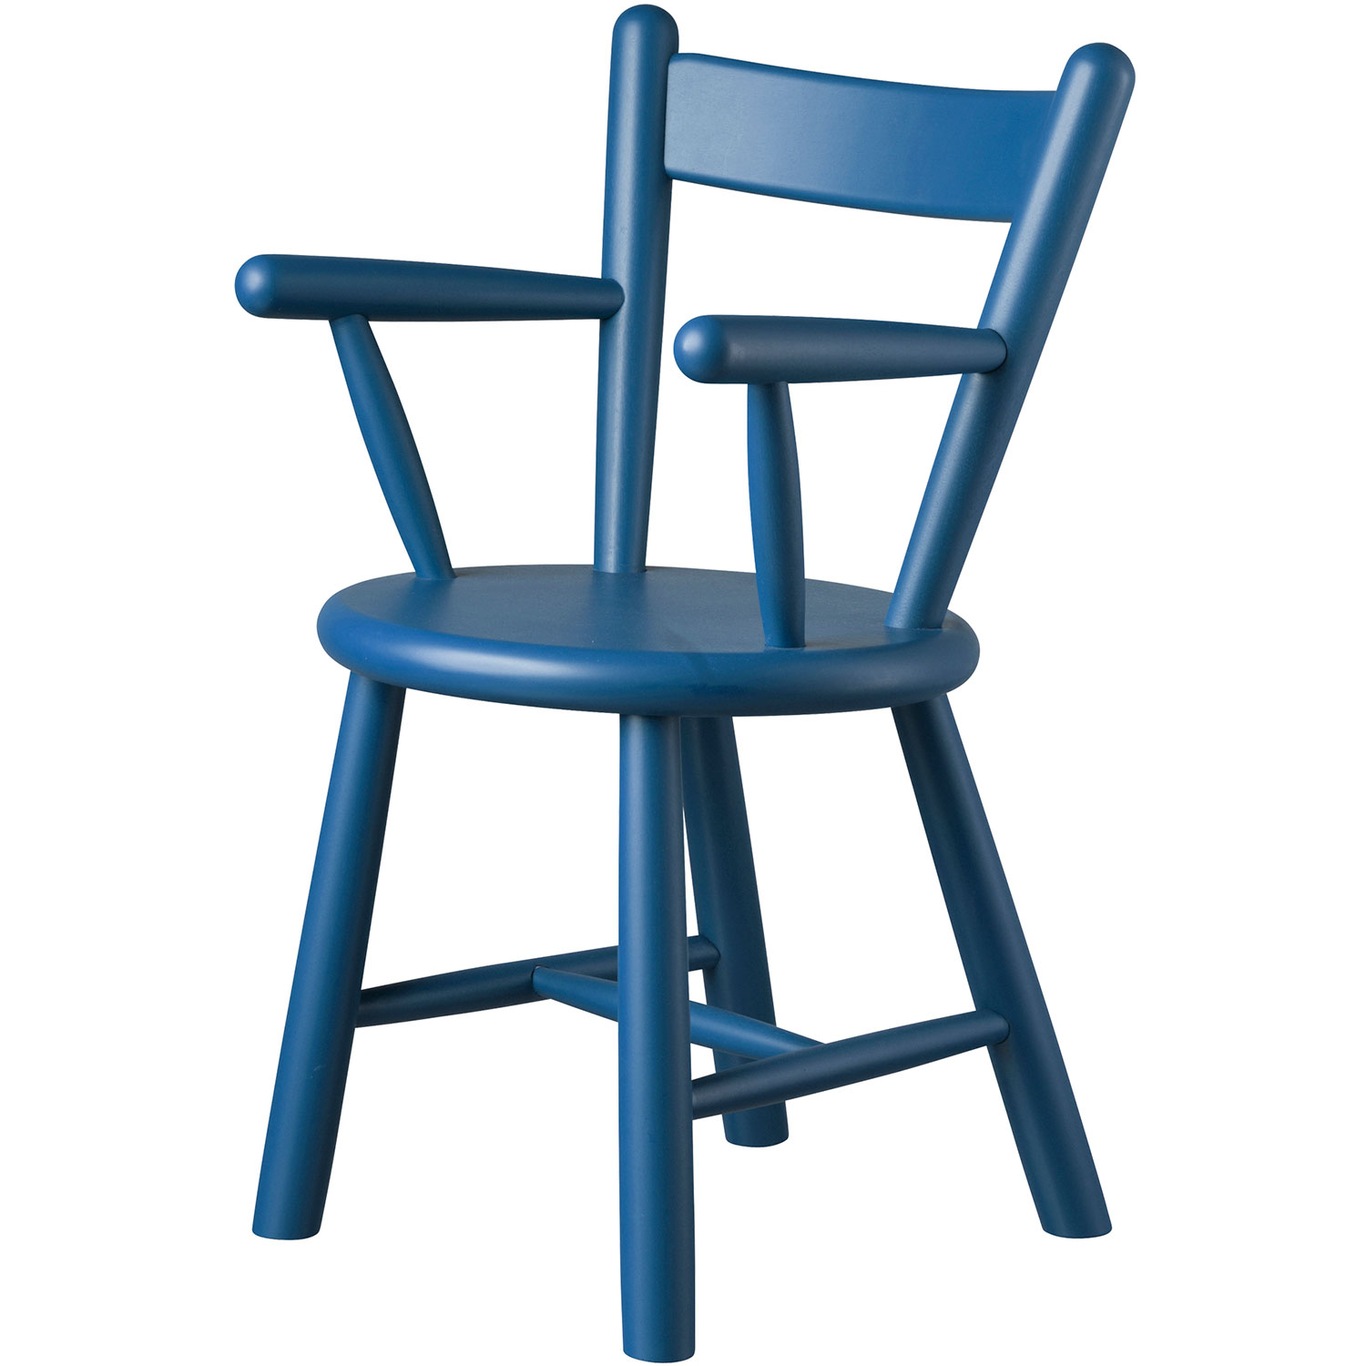 P9 Children'S Chair, Beech / Blue